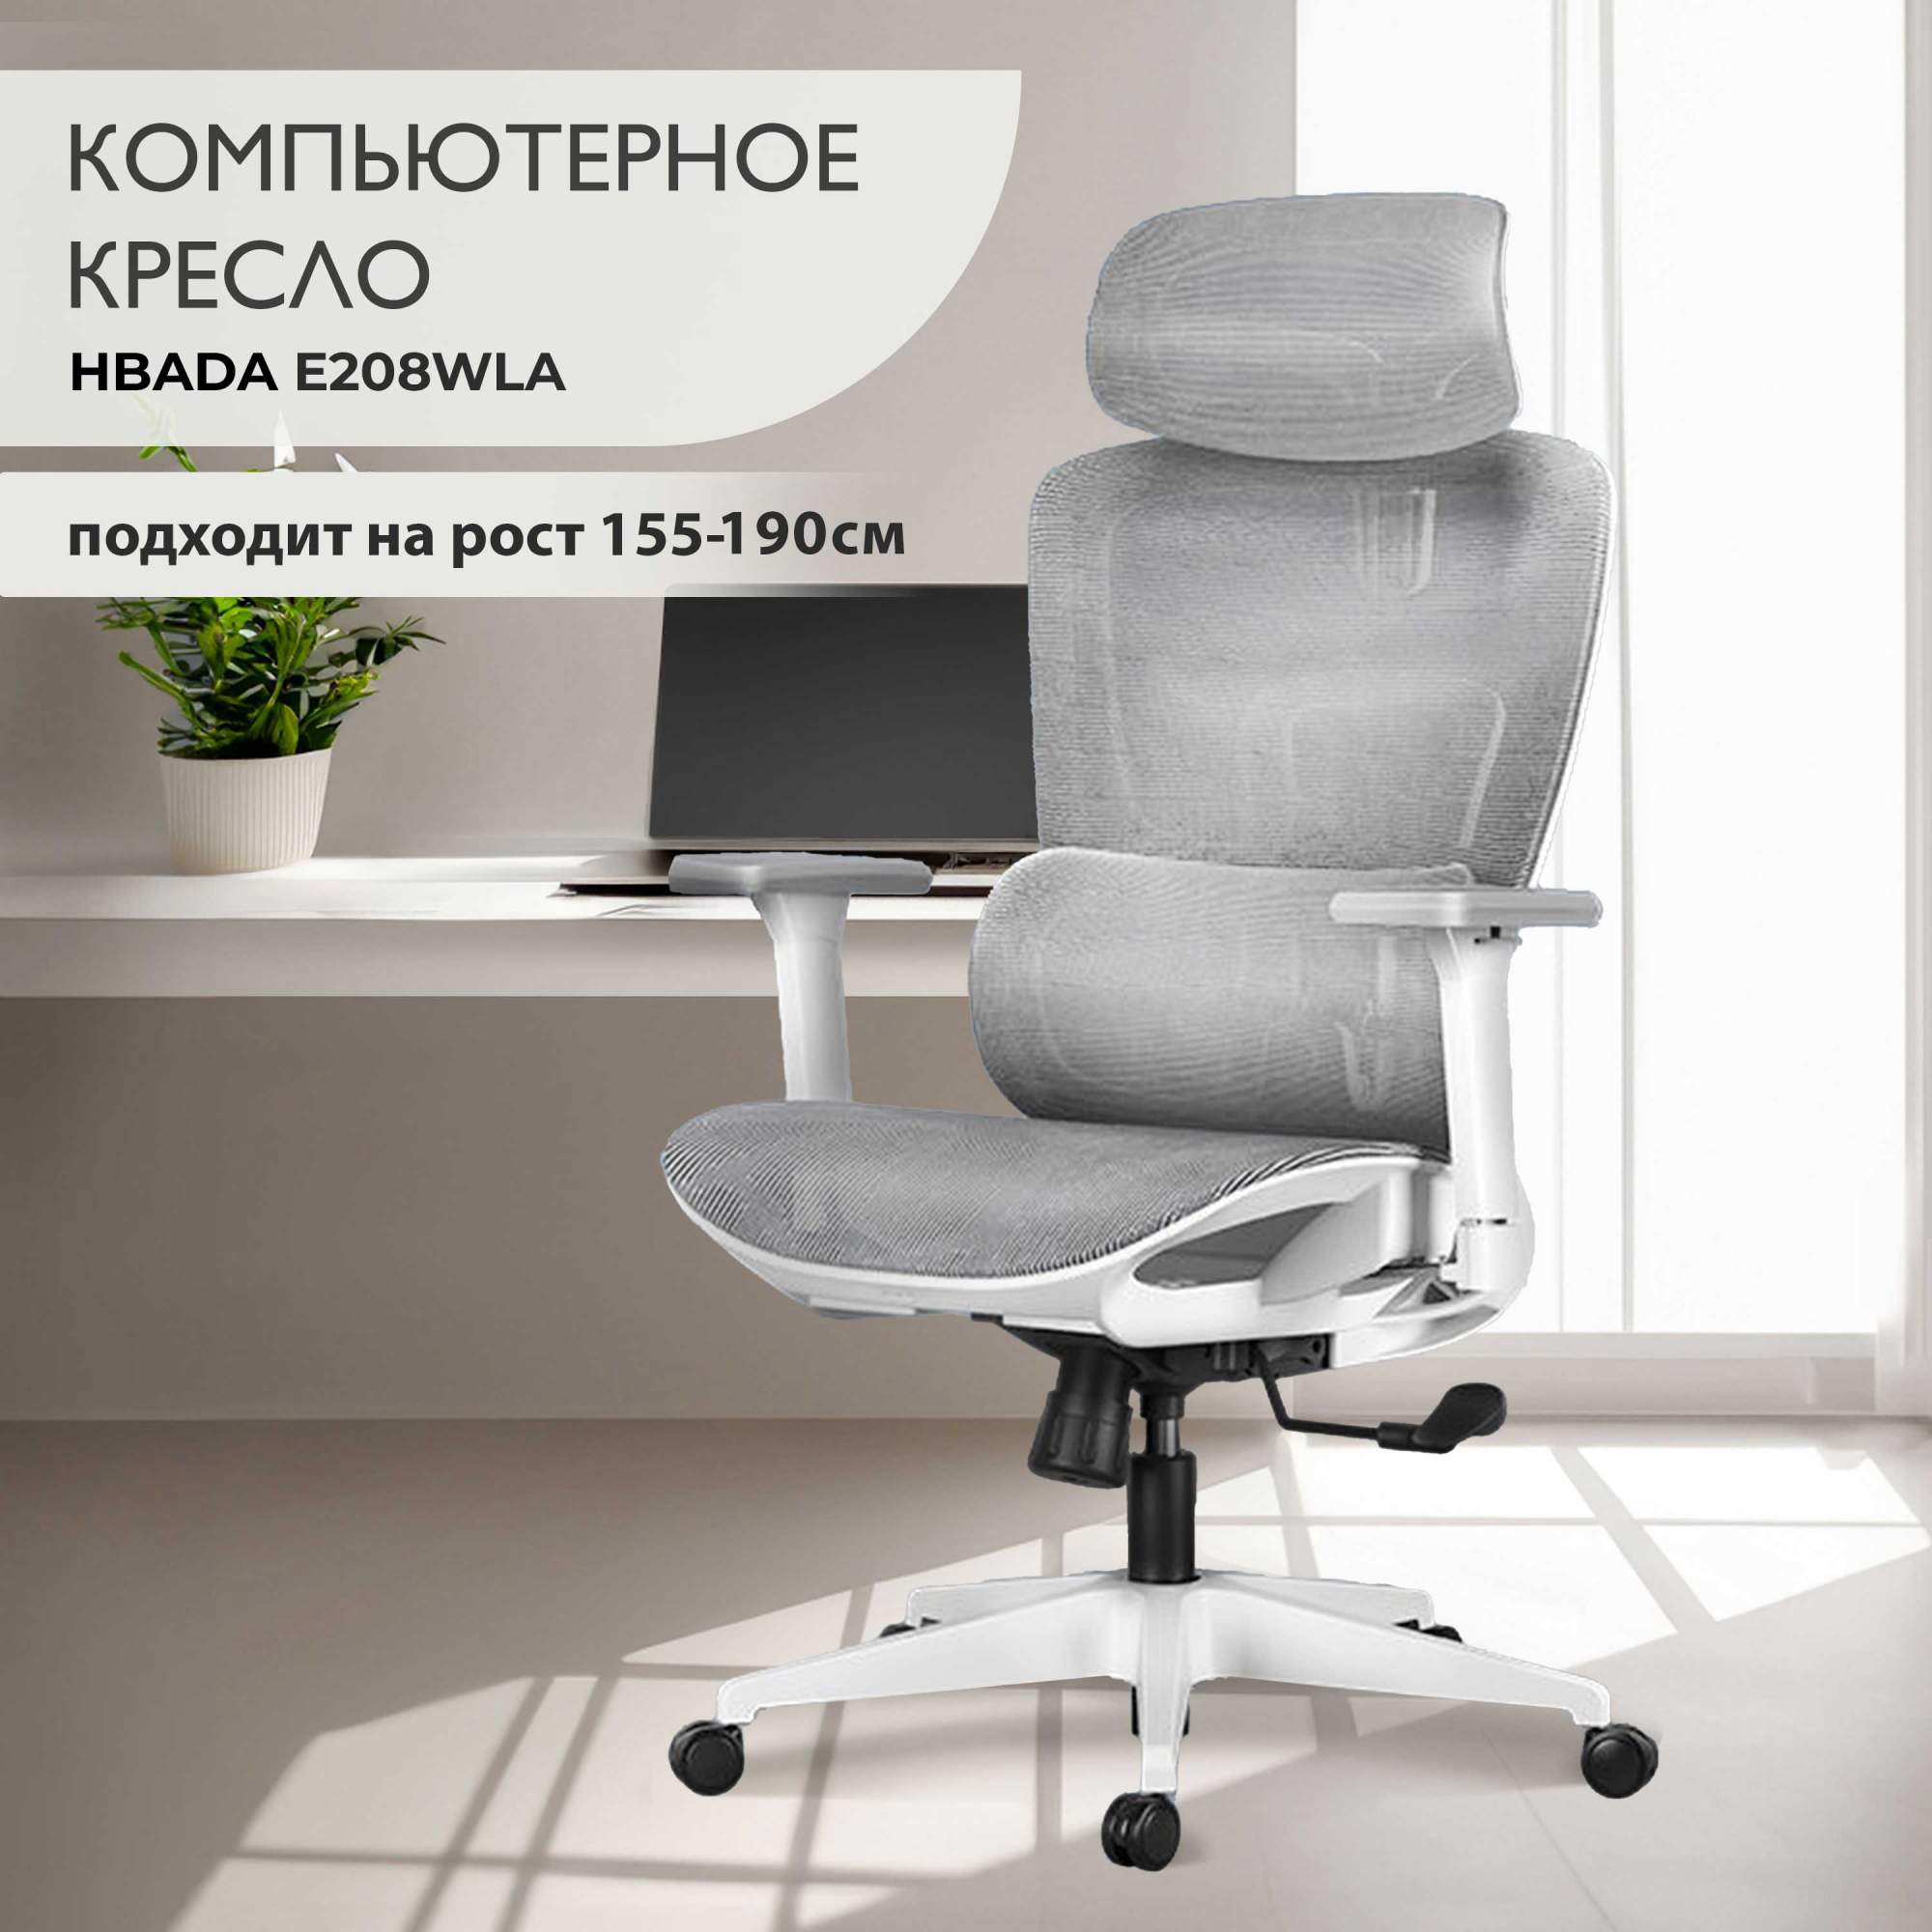 Компьютерное кресло Hbada E208WLA - купить в Москве, цены на Мегамаркет | 600016752352